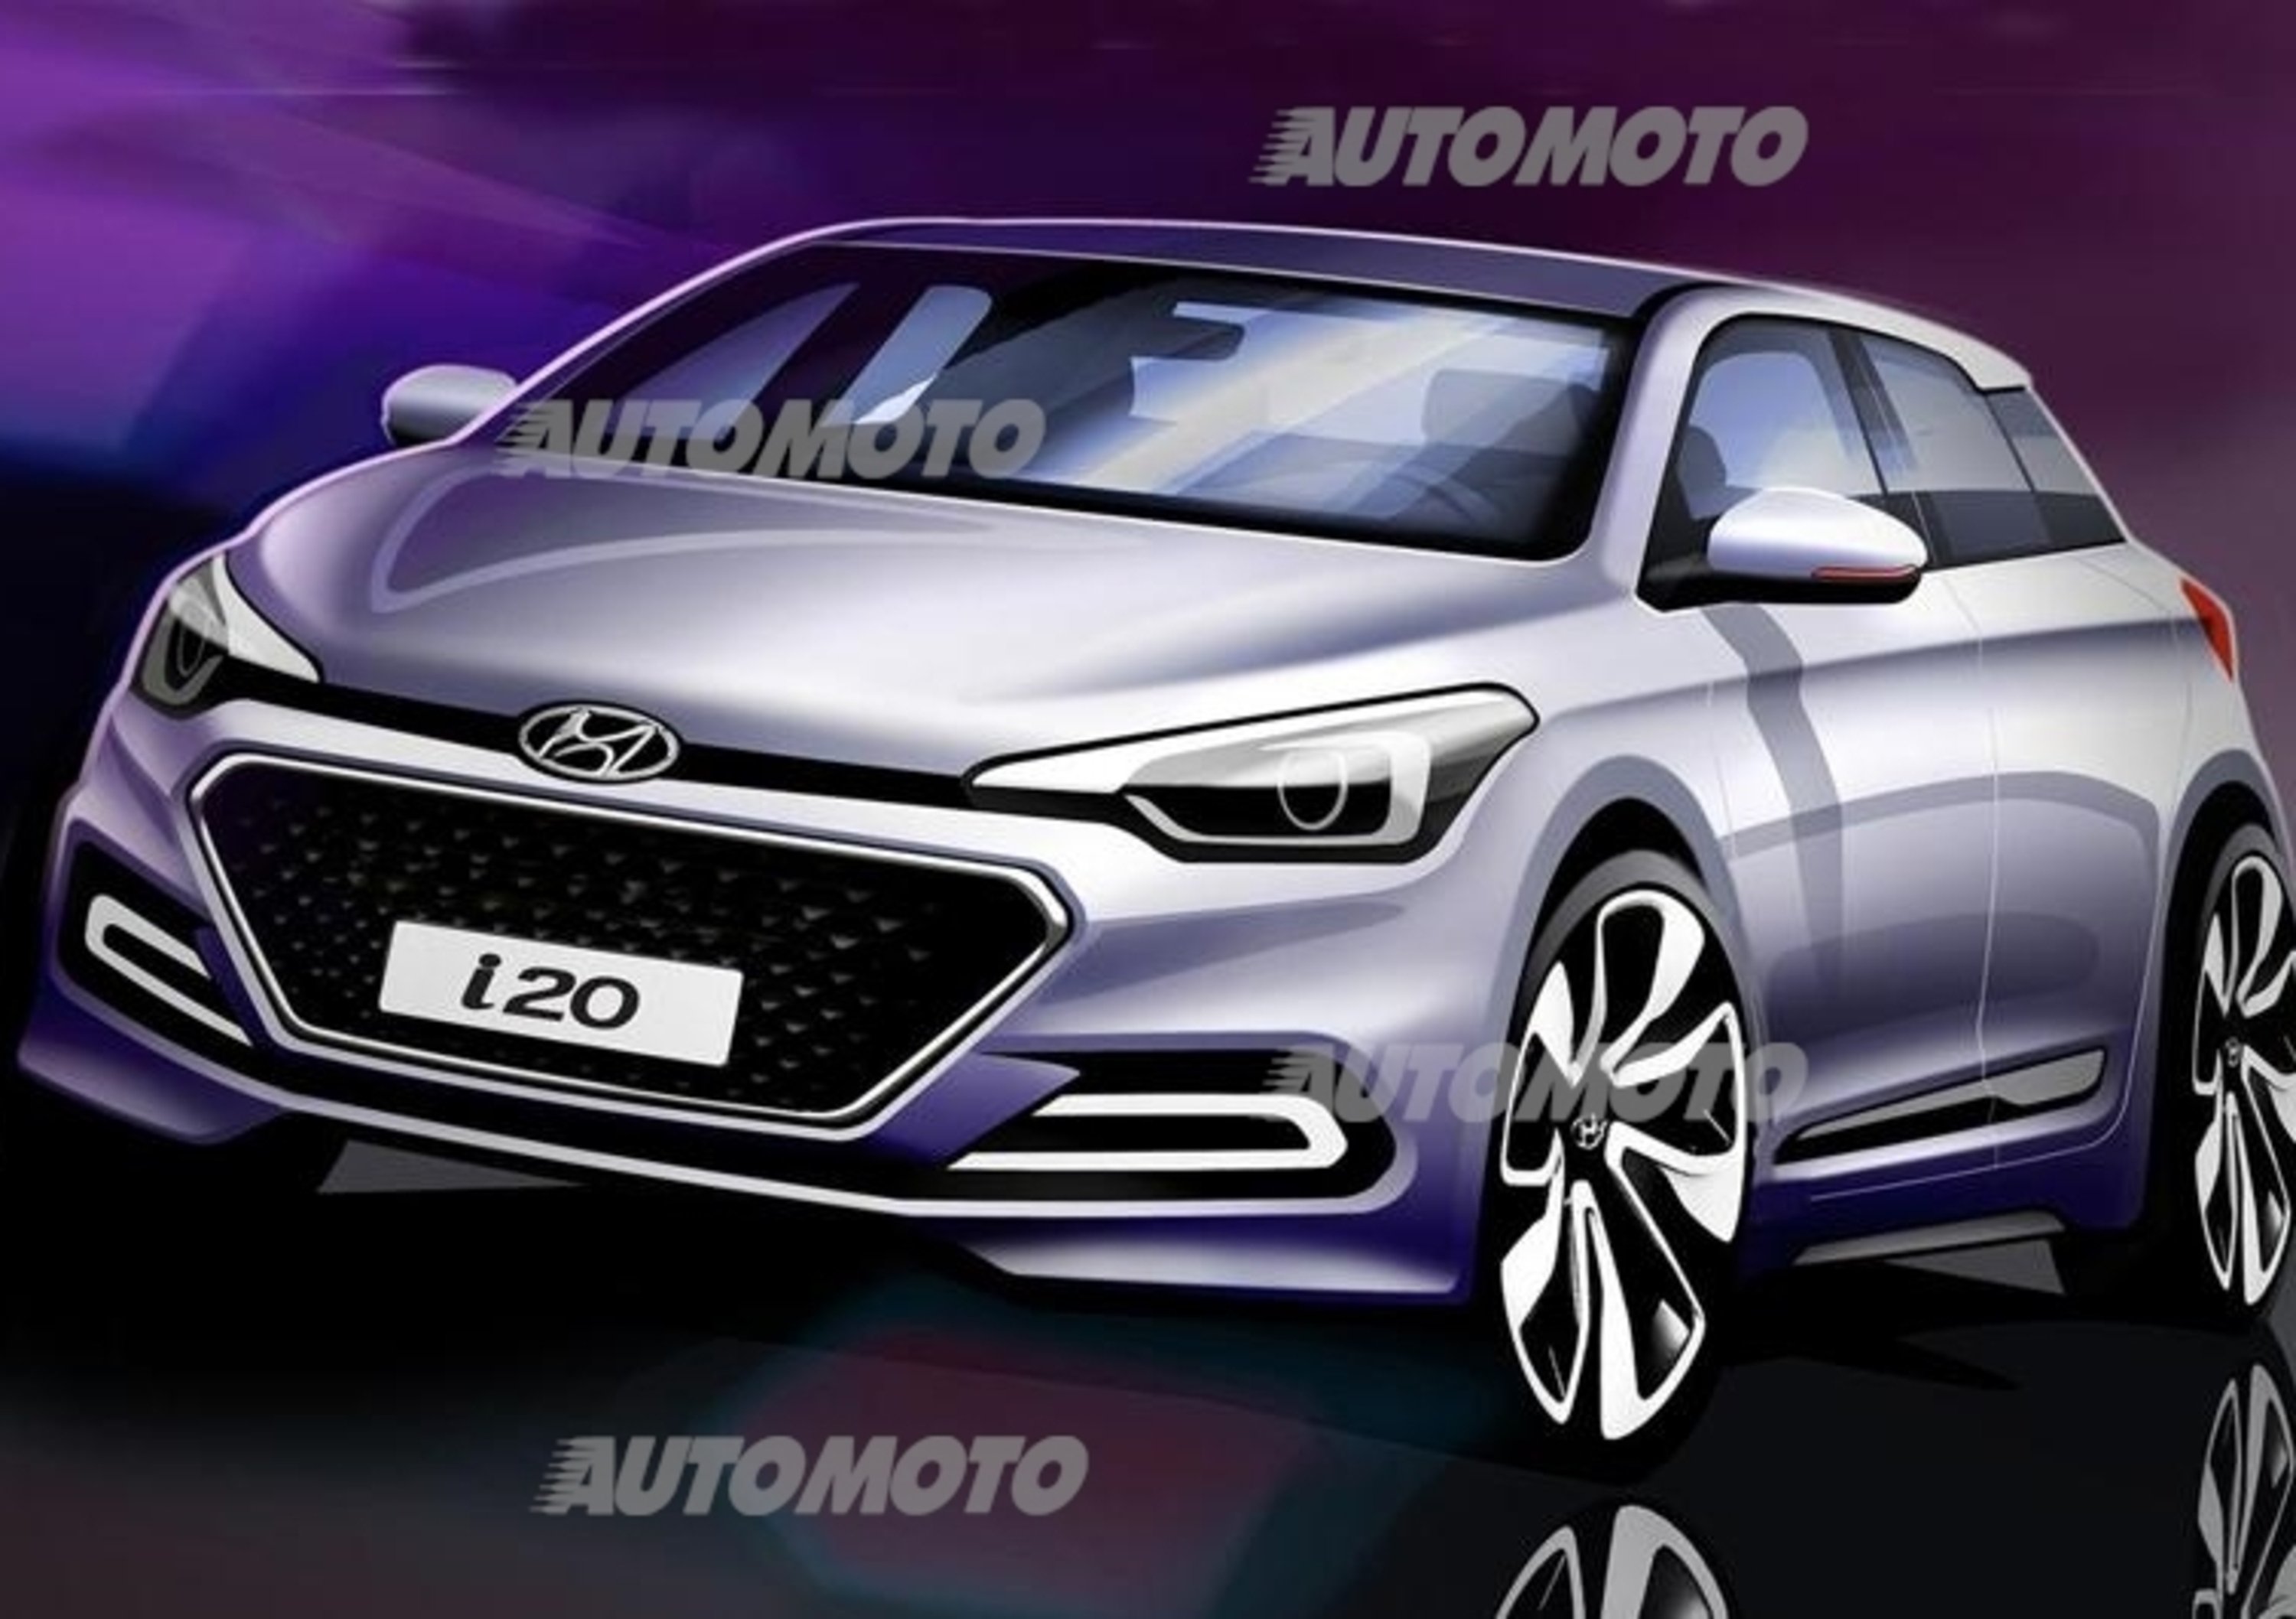 Nuova Hyundai i20: i primi bozzetti della seconda generazione